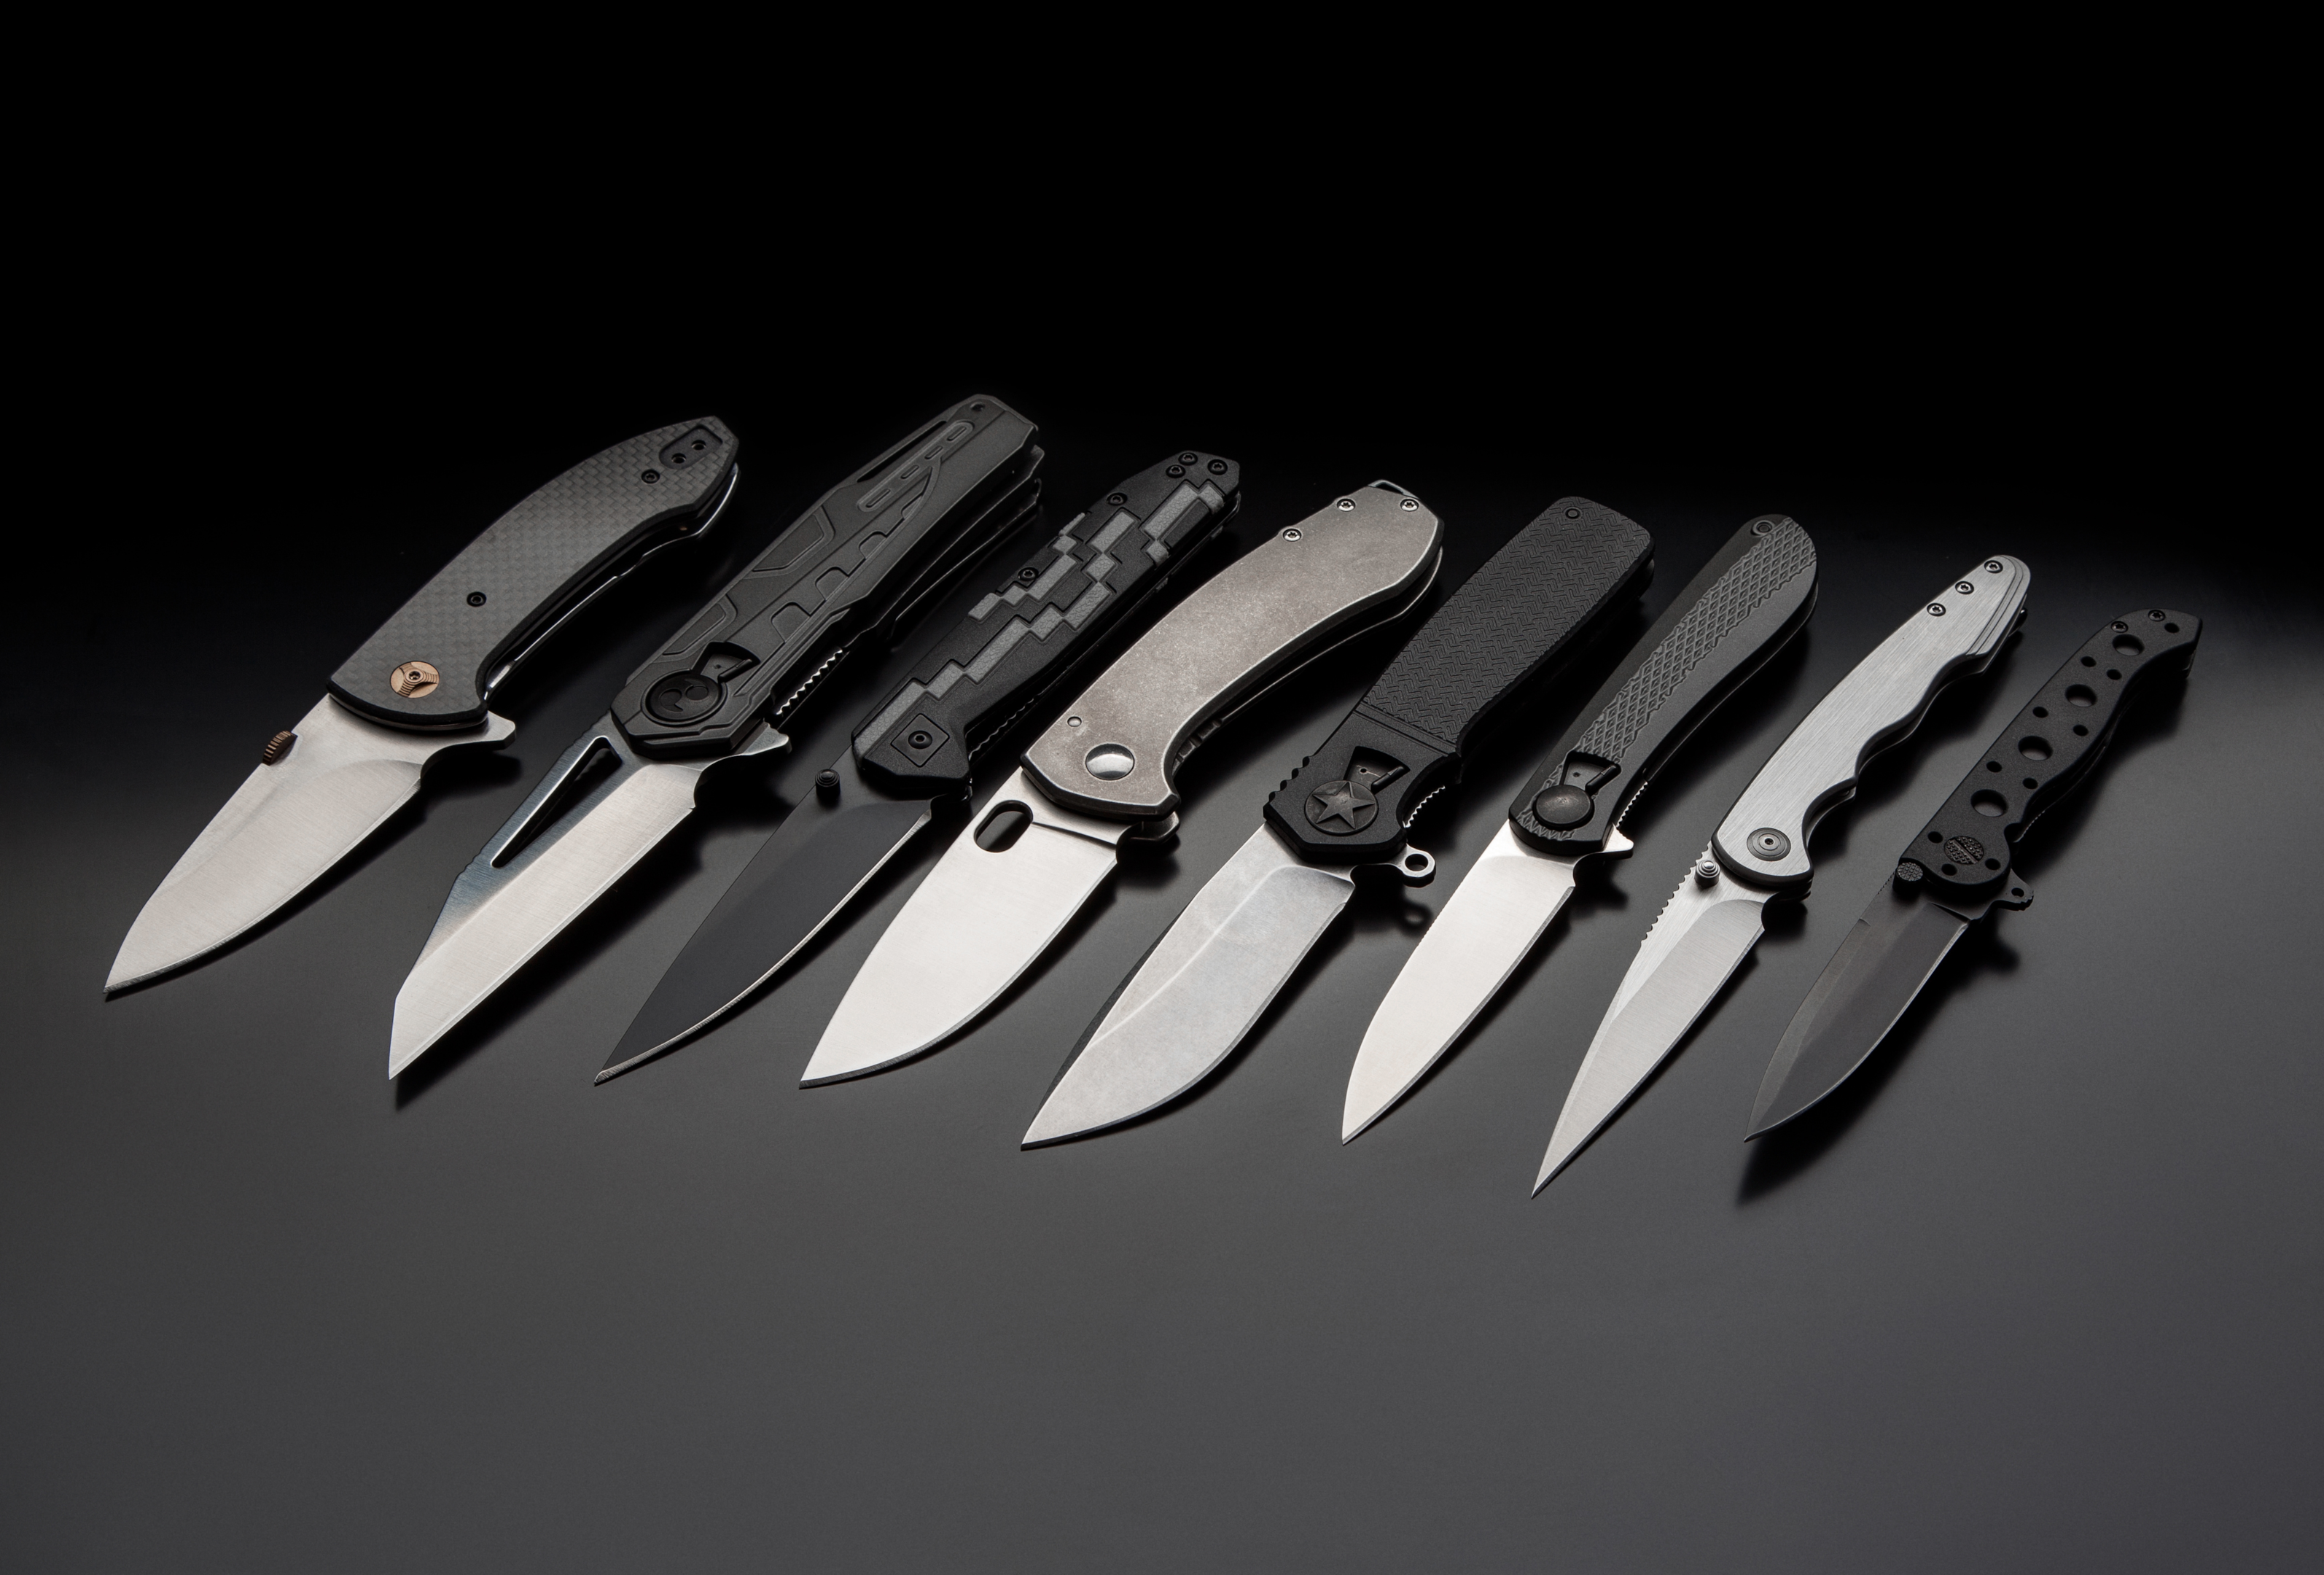 folding knives on a black background. pen knives on a dark background